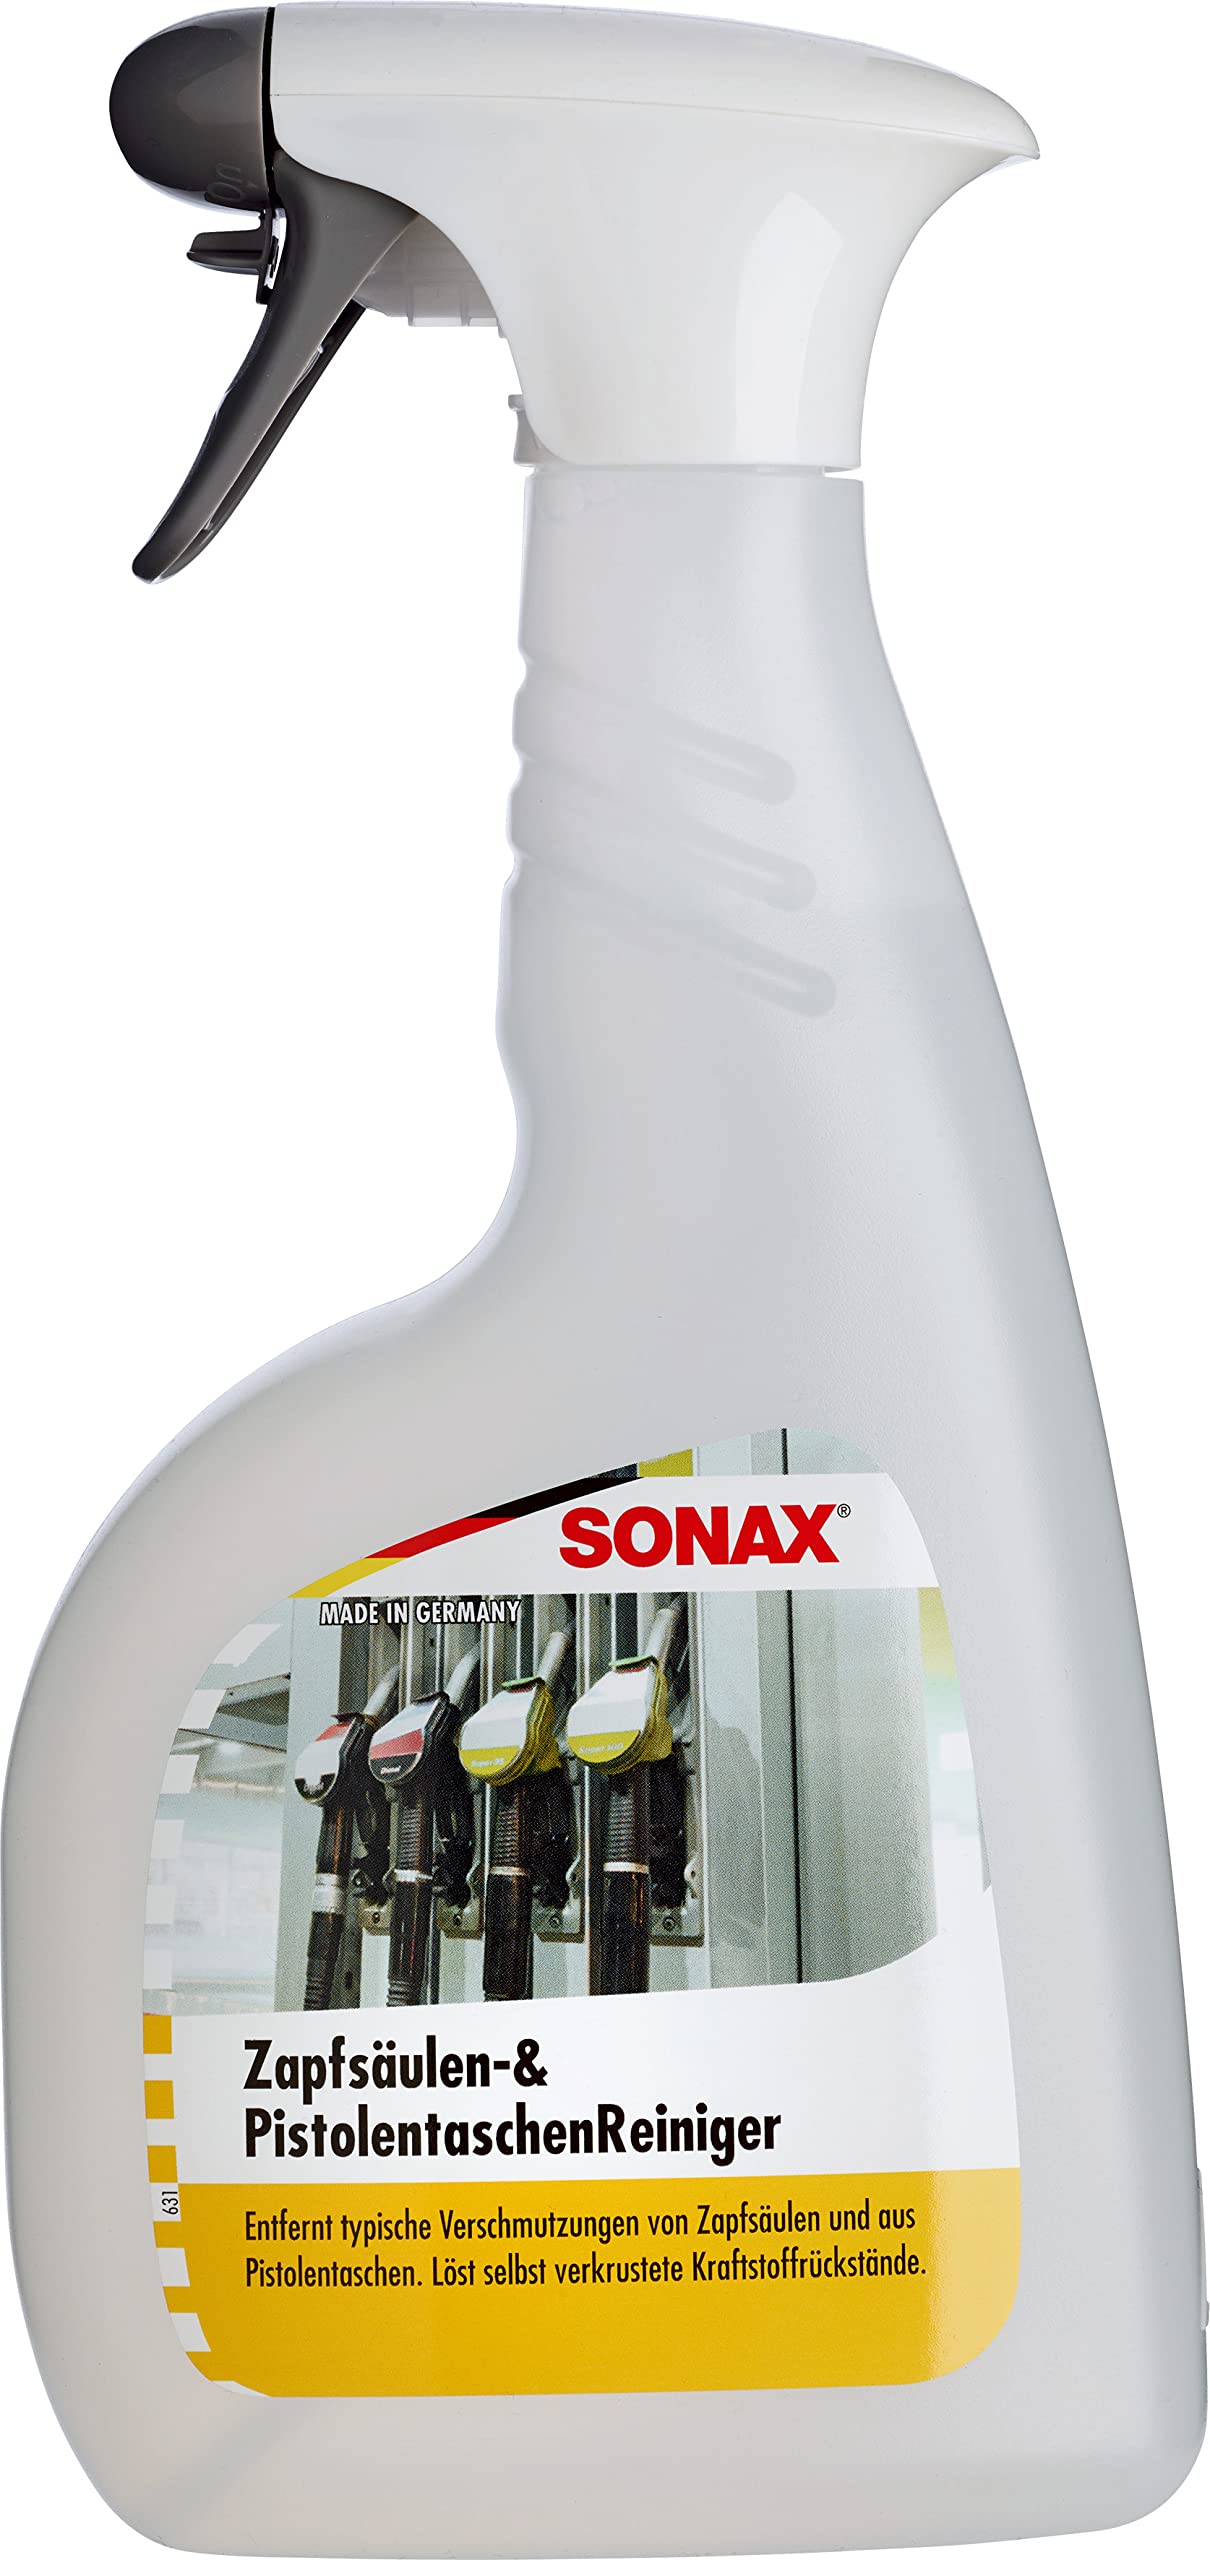 SONAX Zapfsäulen+PistolentaschenReiniger (750 ml) zur schnellen und zuverlässigen Beseitigung aller typischen Öl- und Fettverschmutzungen | Art-Nr. 04664000 von SONAX